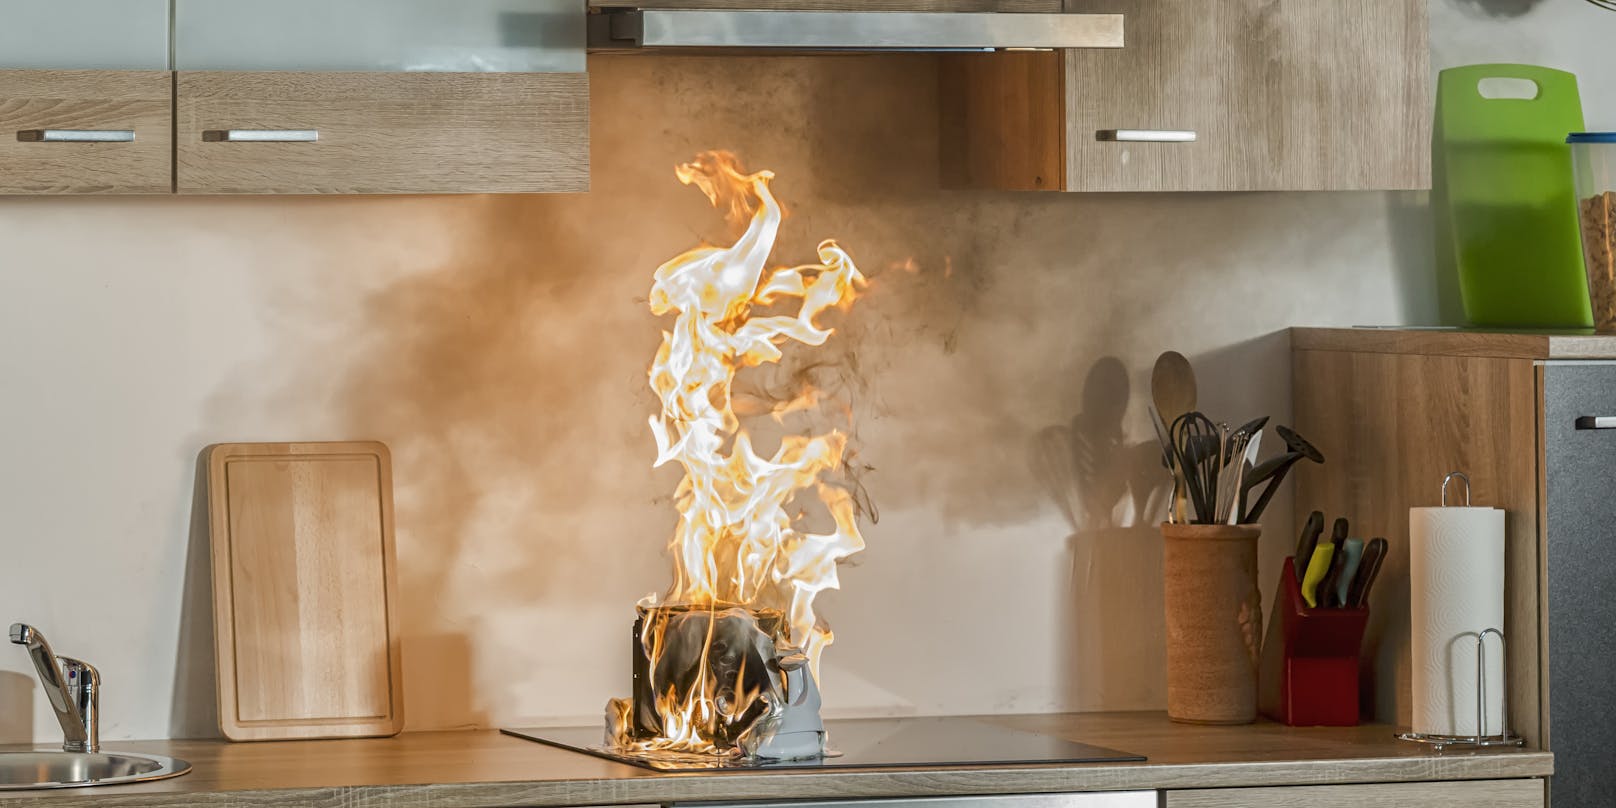 Das Feuer in der Küche konnte vom Bewohner selbst gelöscht werden. Symbolbild.